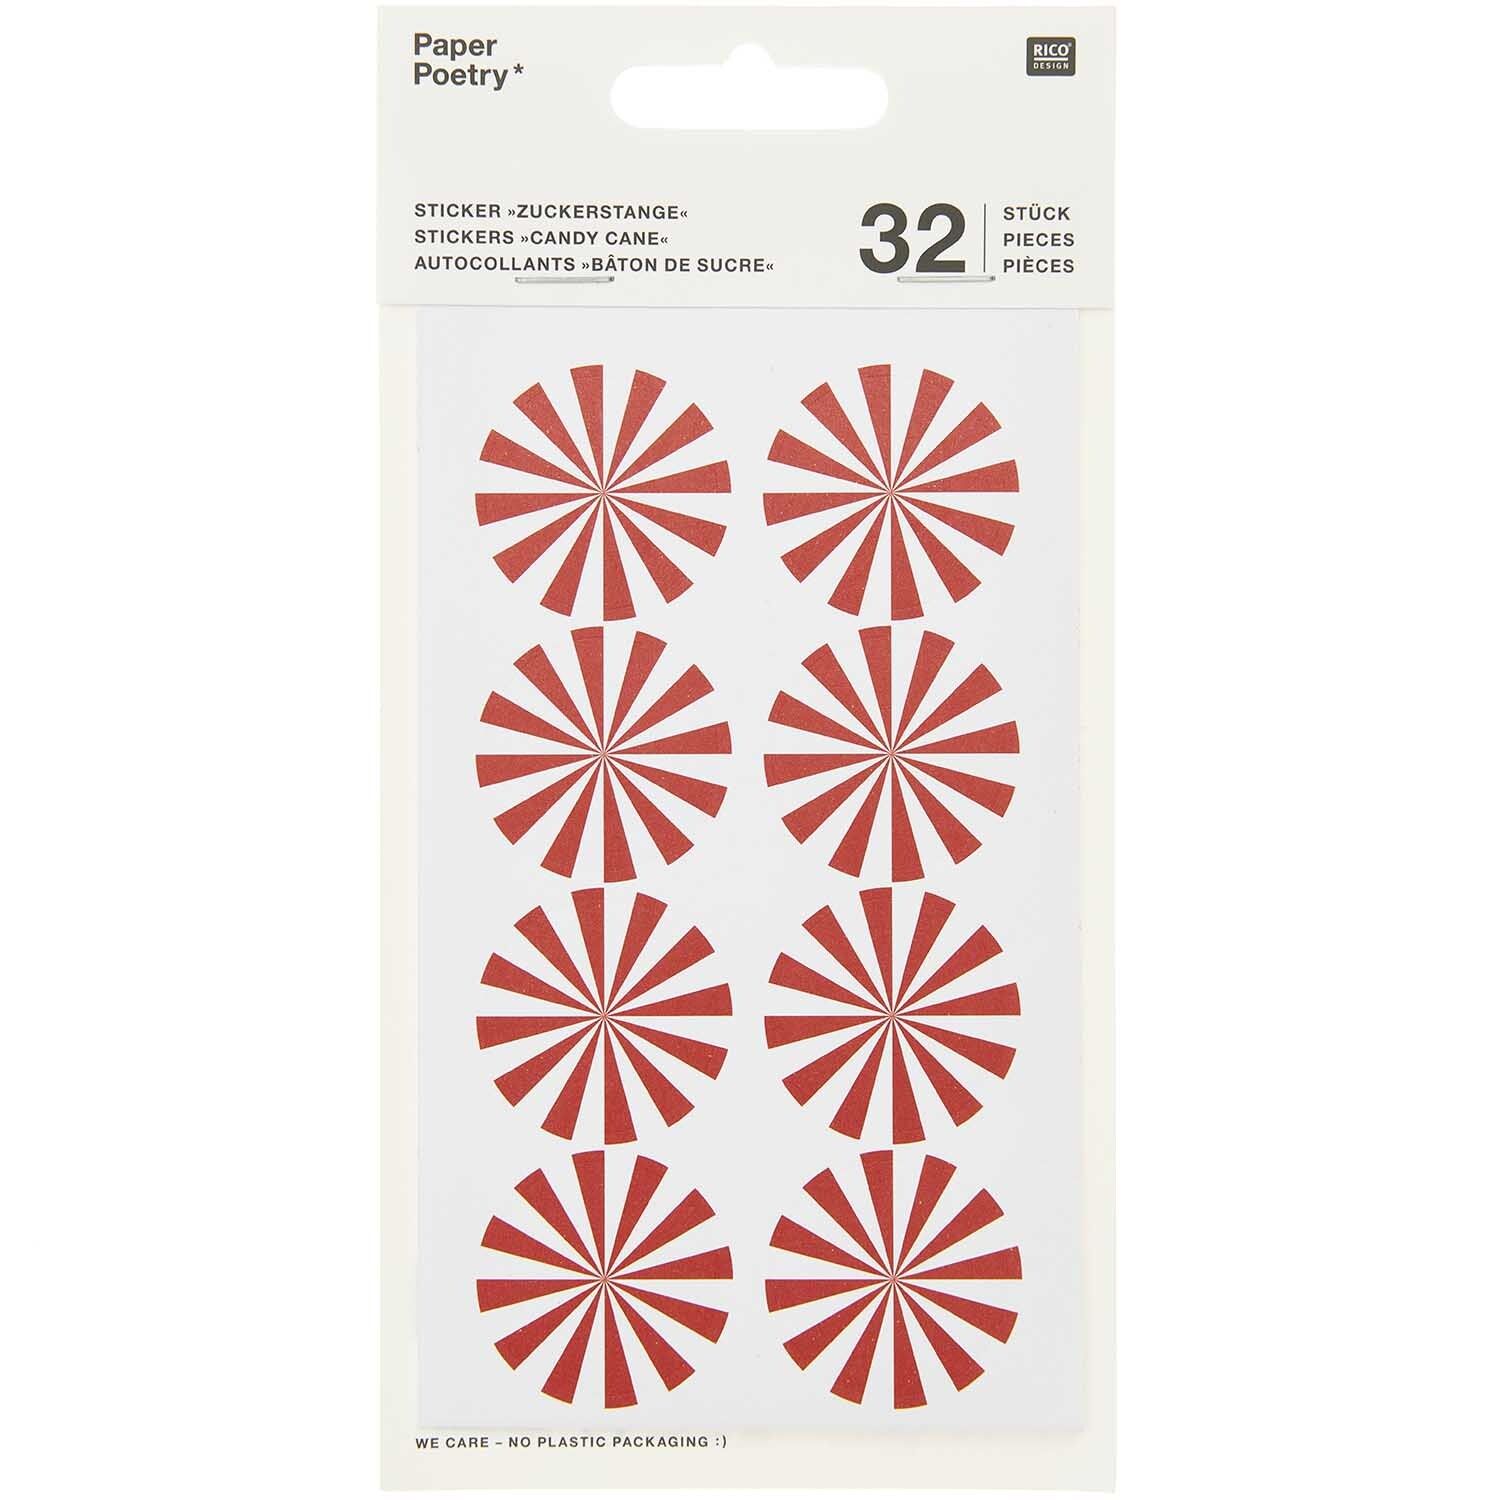 Paper Poetry Sticker Christmas rot-weiß 4 Blatt günstig online kaufen »